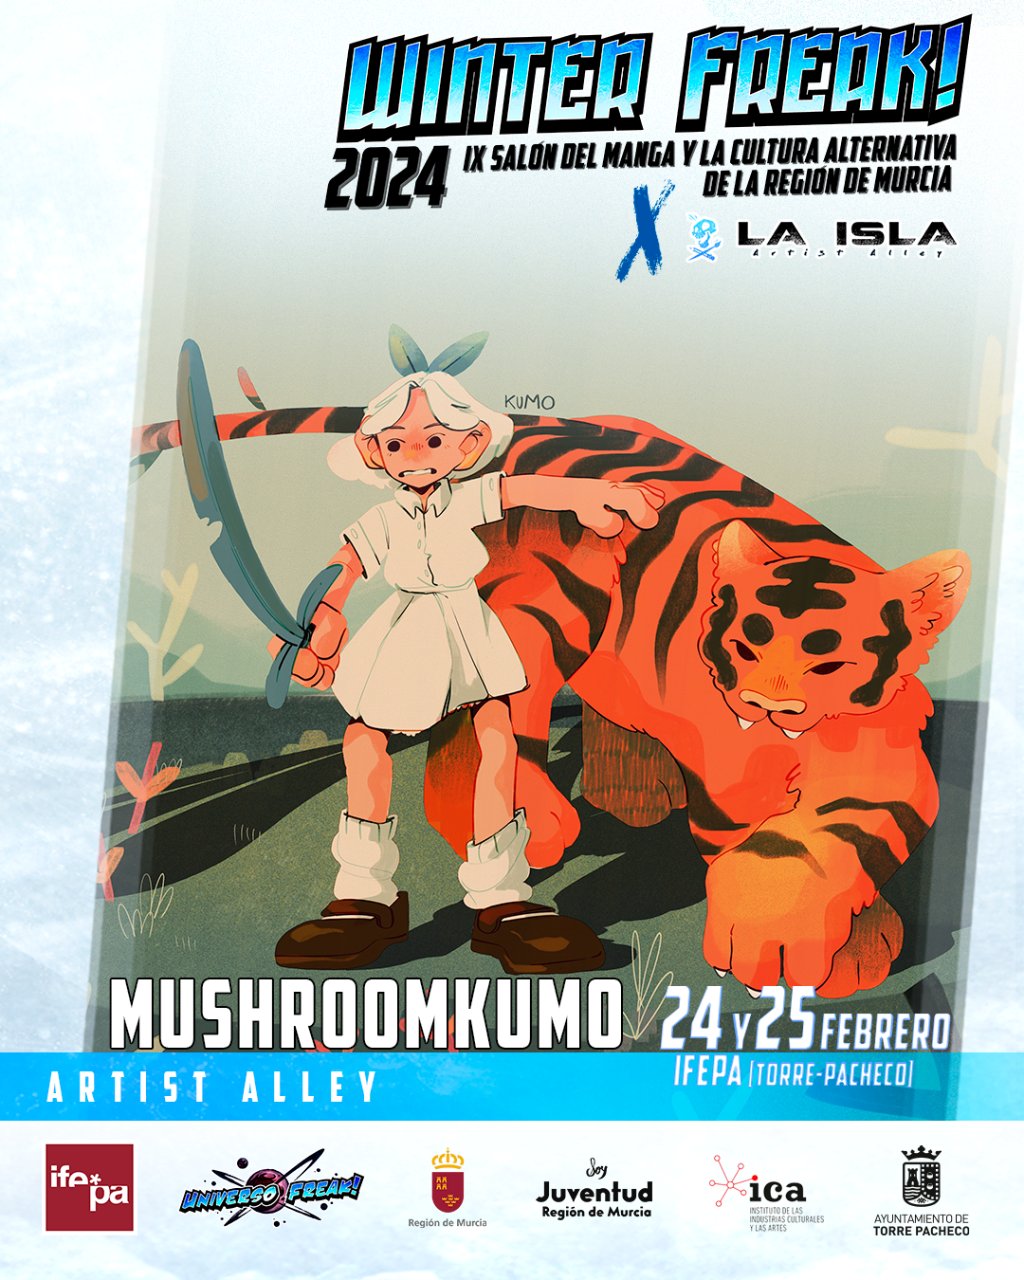 Muchroomkumo 2024